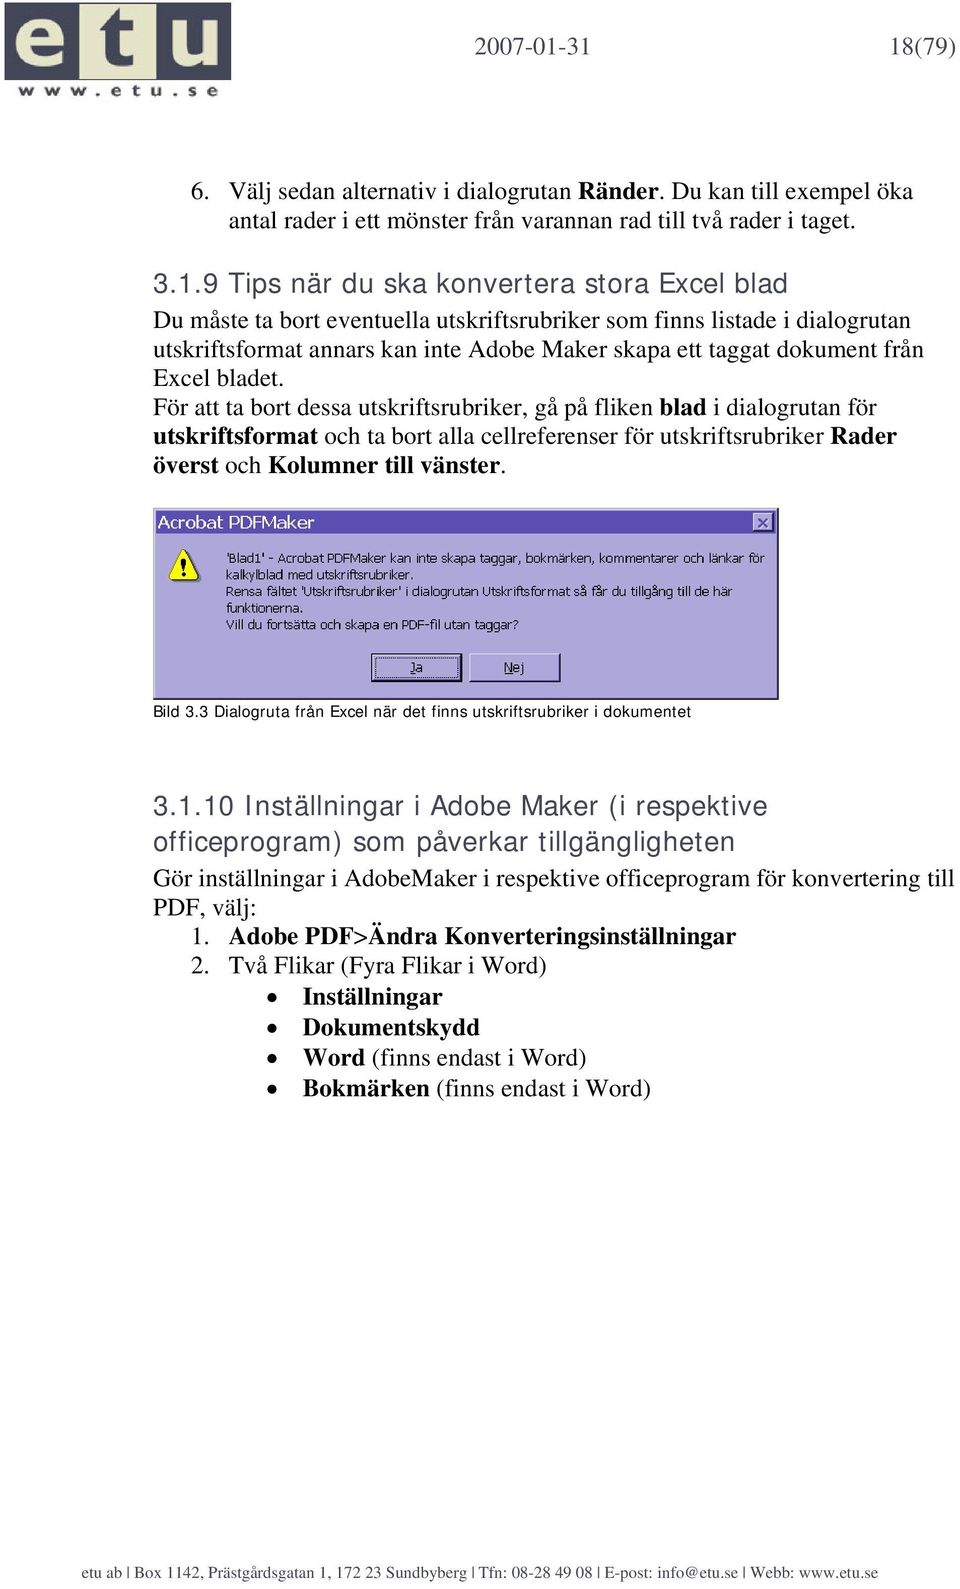 Du måste ta bort eventuella utskriftsrubriker som finns listade i dialogrutan utskriftsformat annars kan inte Adobe Maker skapa ett taggat dokument från Excel bladet.